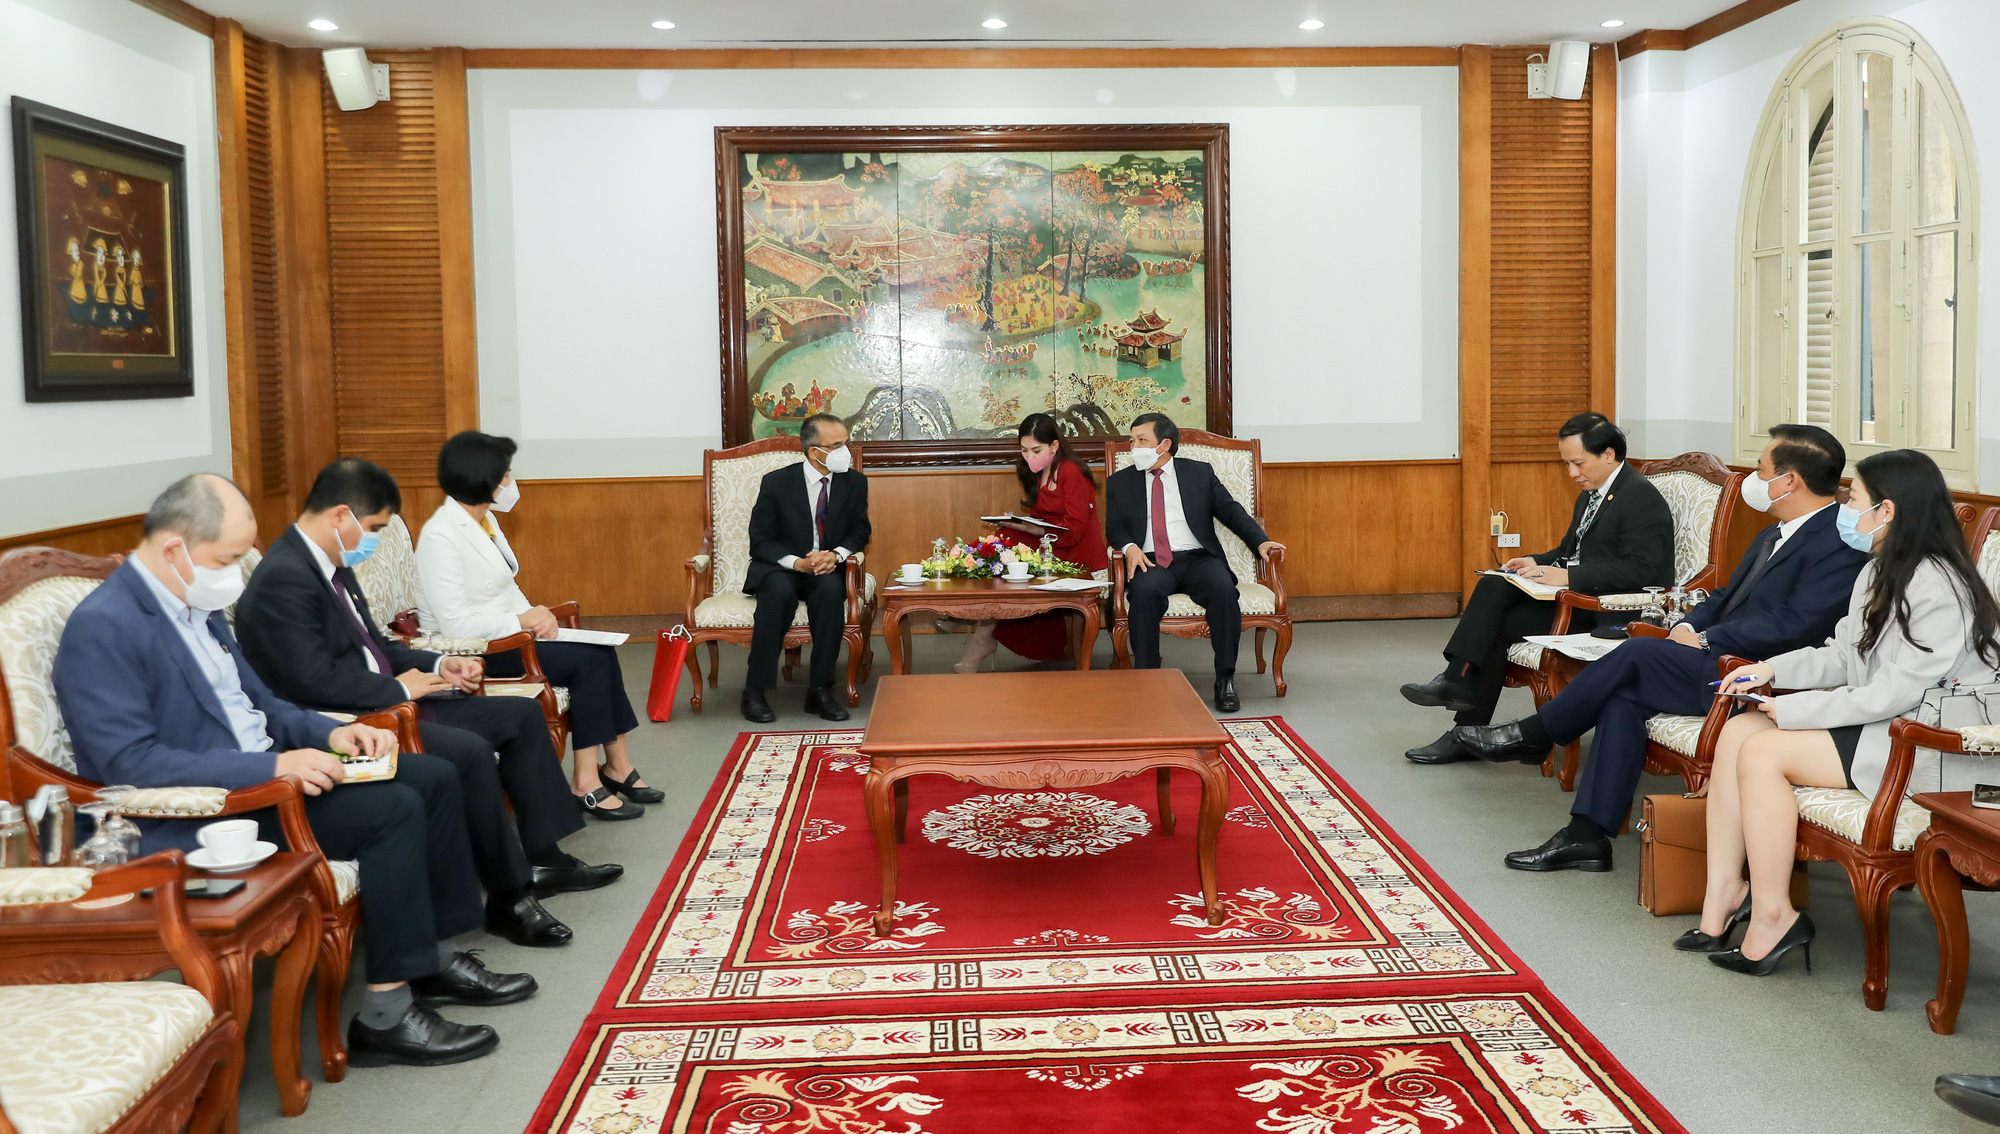 Thứ trưởng Đoàn Văn Việt tiếp Đại sứ Cộng hòa Dân chủ Liên bang Nepal và Đại sứ Cộng hòa Maldives tại Việt Nam - Ảnh 1.